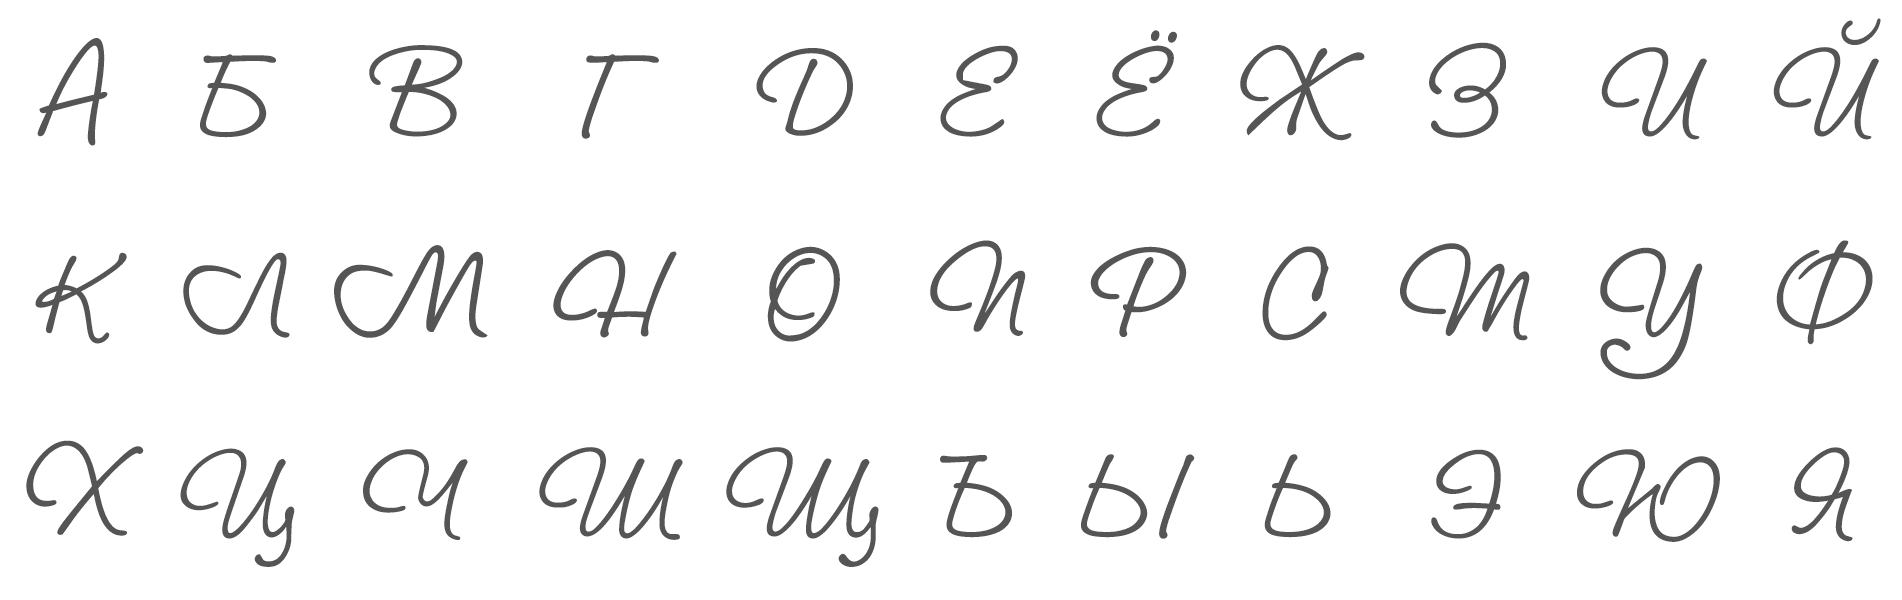 Шрифты скопировать буквы. Русский алфавит красивыми буквами. Красивый почерк буквы алфавита. Красивый подверк алфавит. Красивый почерк алавит.